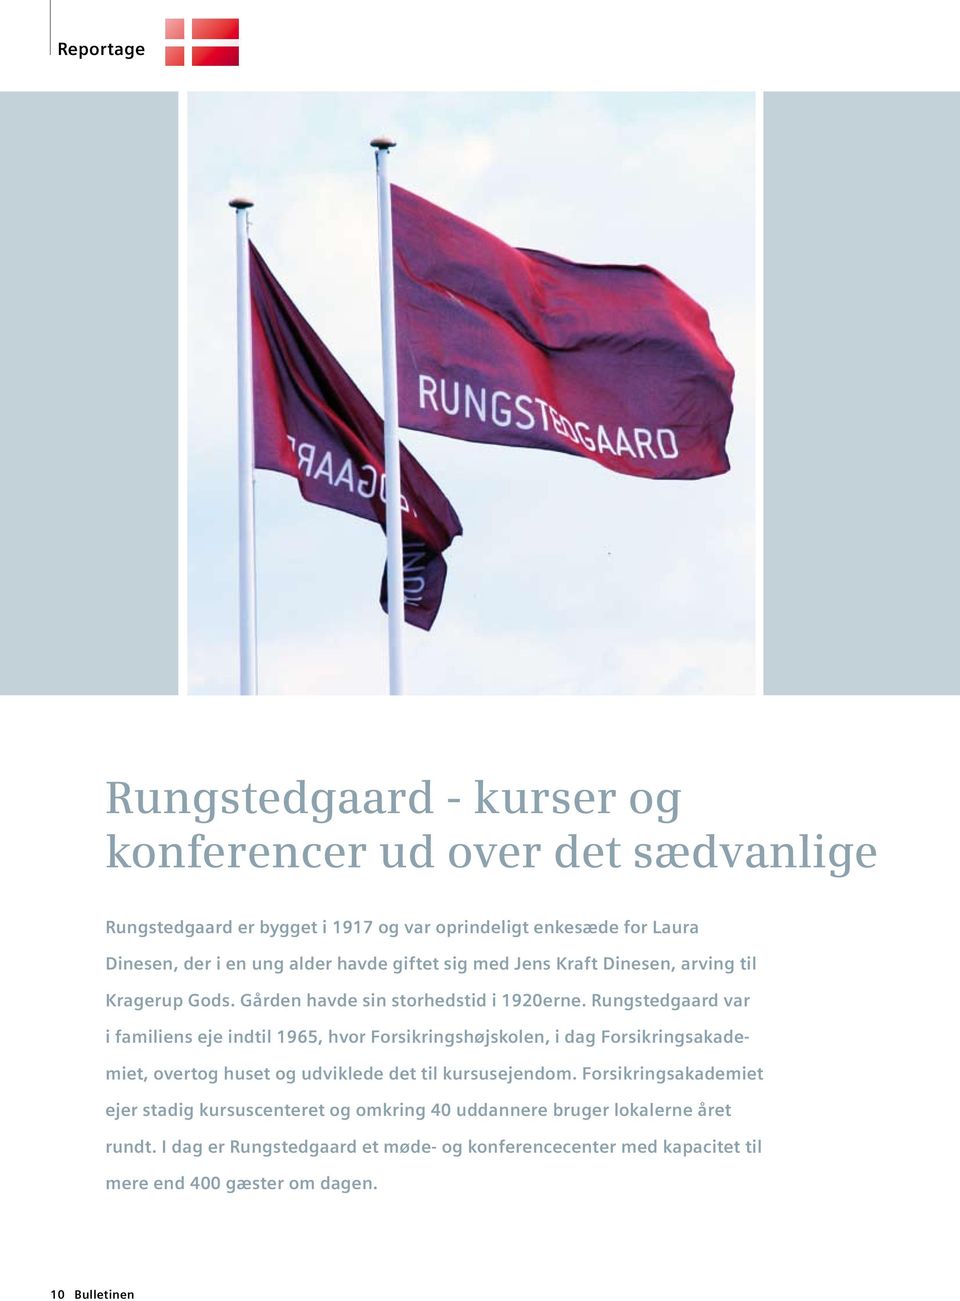 Rungstedgaard var i familiens eje indtil 1965, hvor Forsikringshøjskolen, i dag Forsikringsakademiet, overtog huset og udviklede det til kursusejendom.